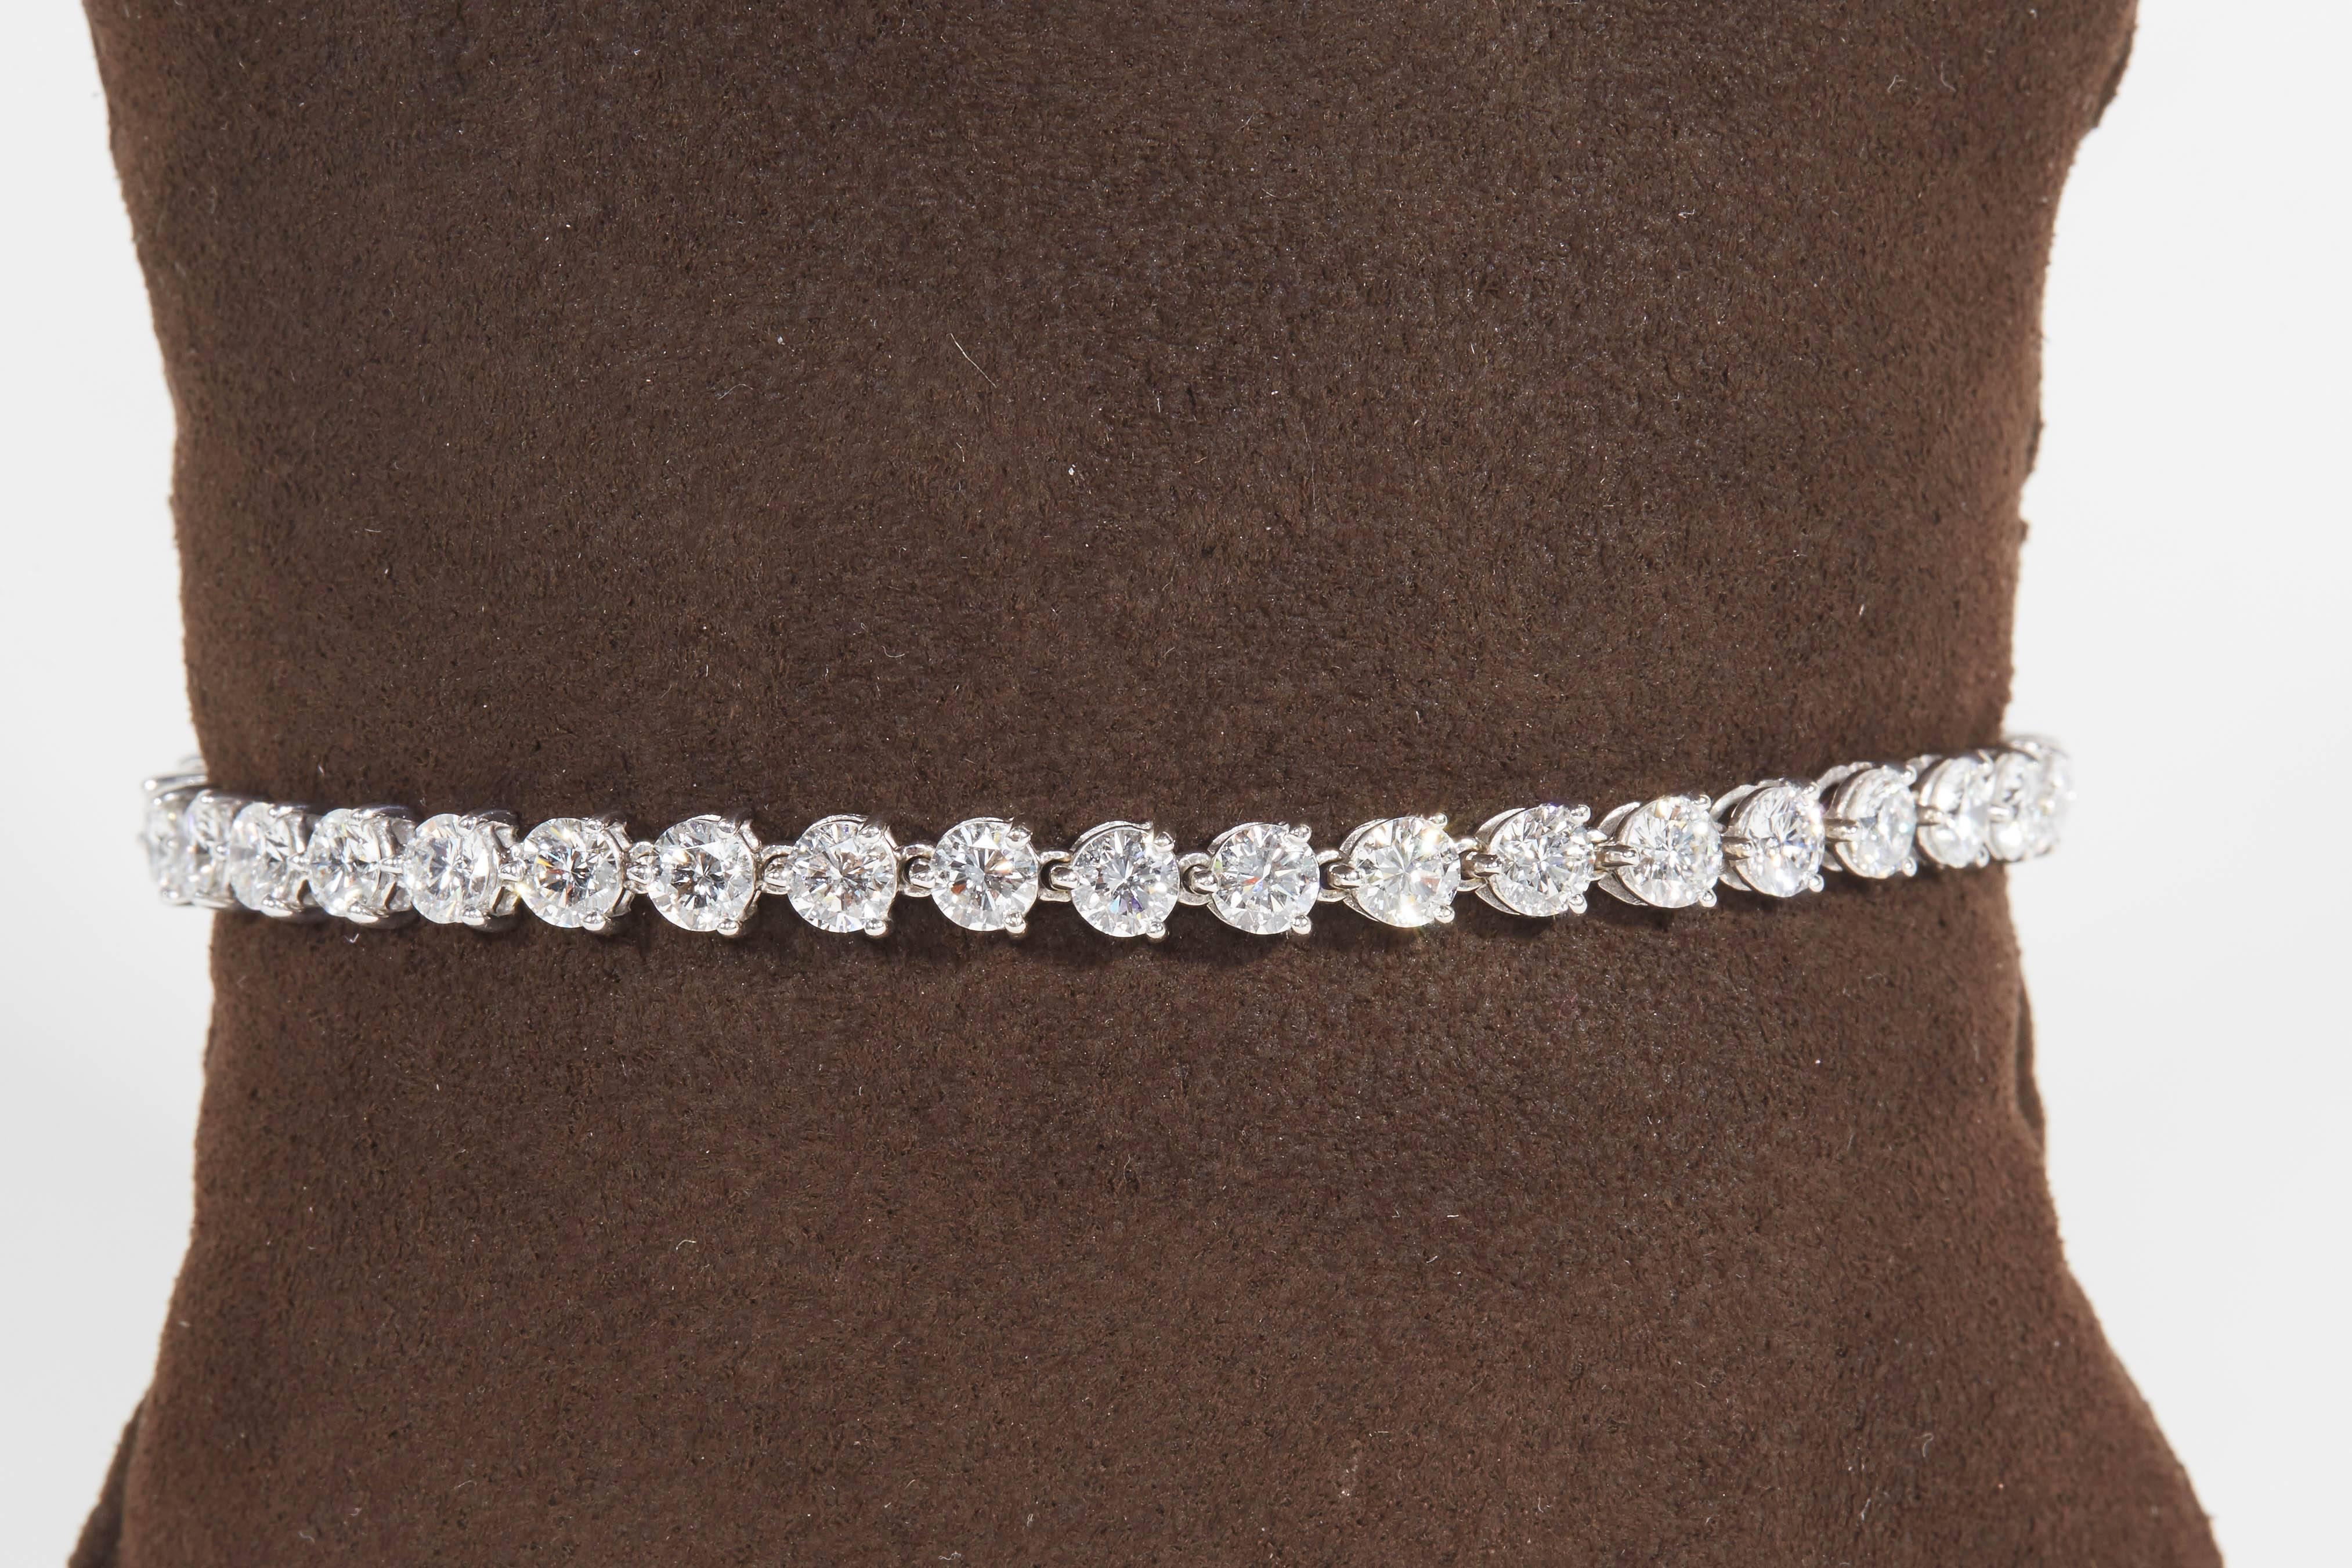 
Un magnifique bracelet de tennis en diamant réalisé avec des diamants ronds de haute qualité, taille brillant. 

Ce bracelet à trois branches a été conçu pour maximiser la brillance des diamants. Une quantité minimale de métal est utilisée dans ce